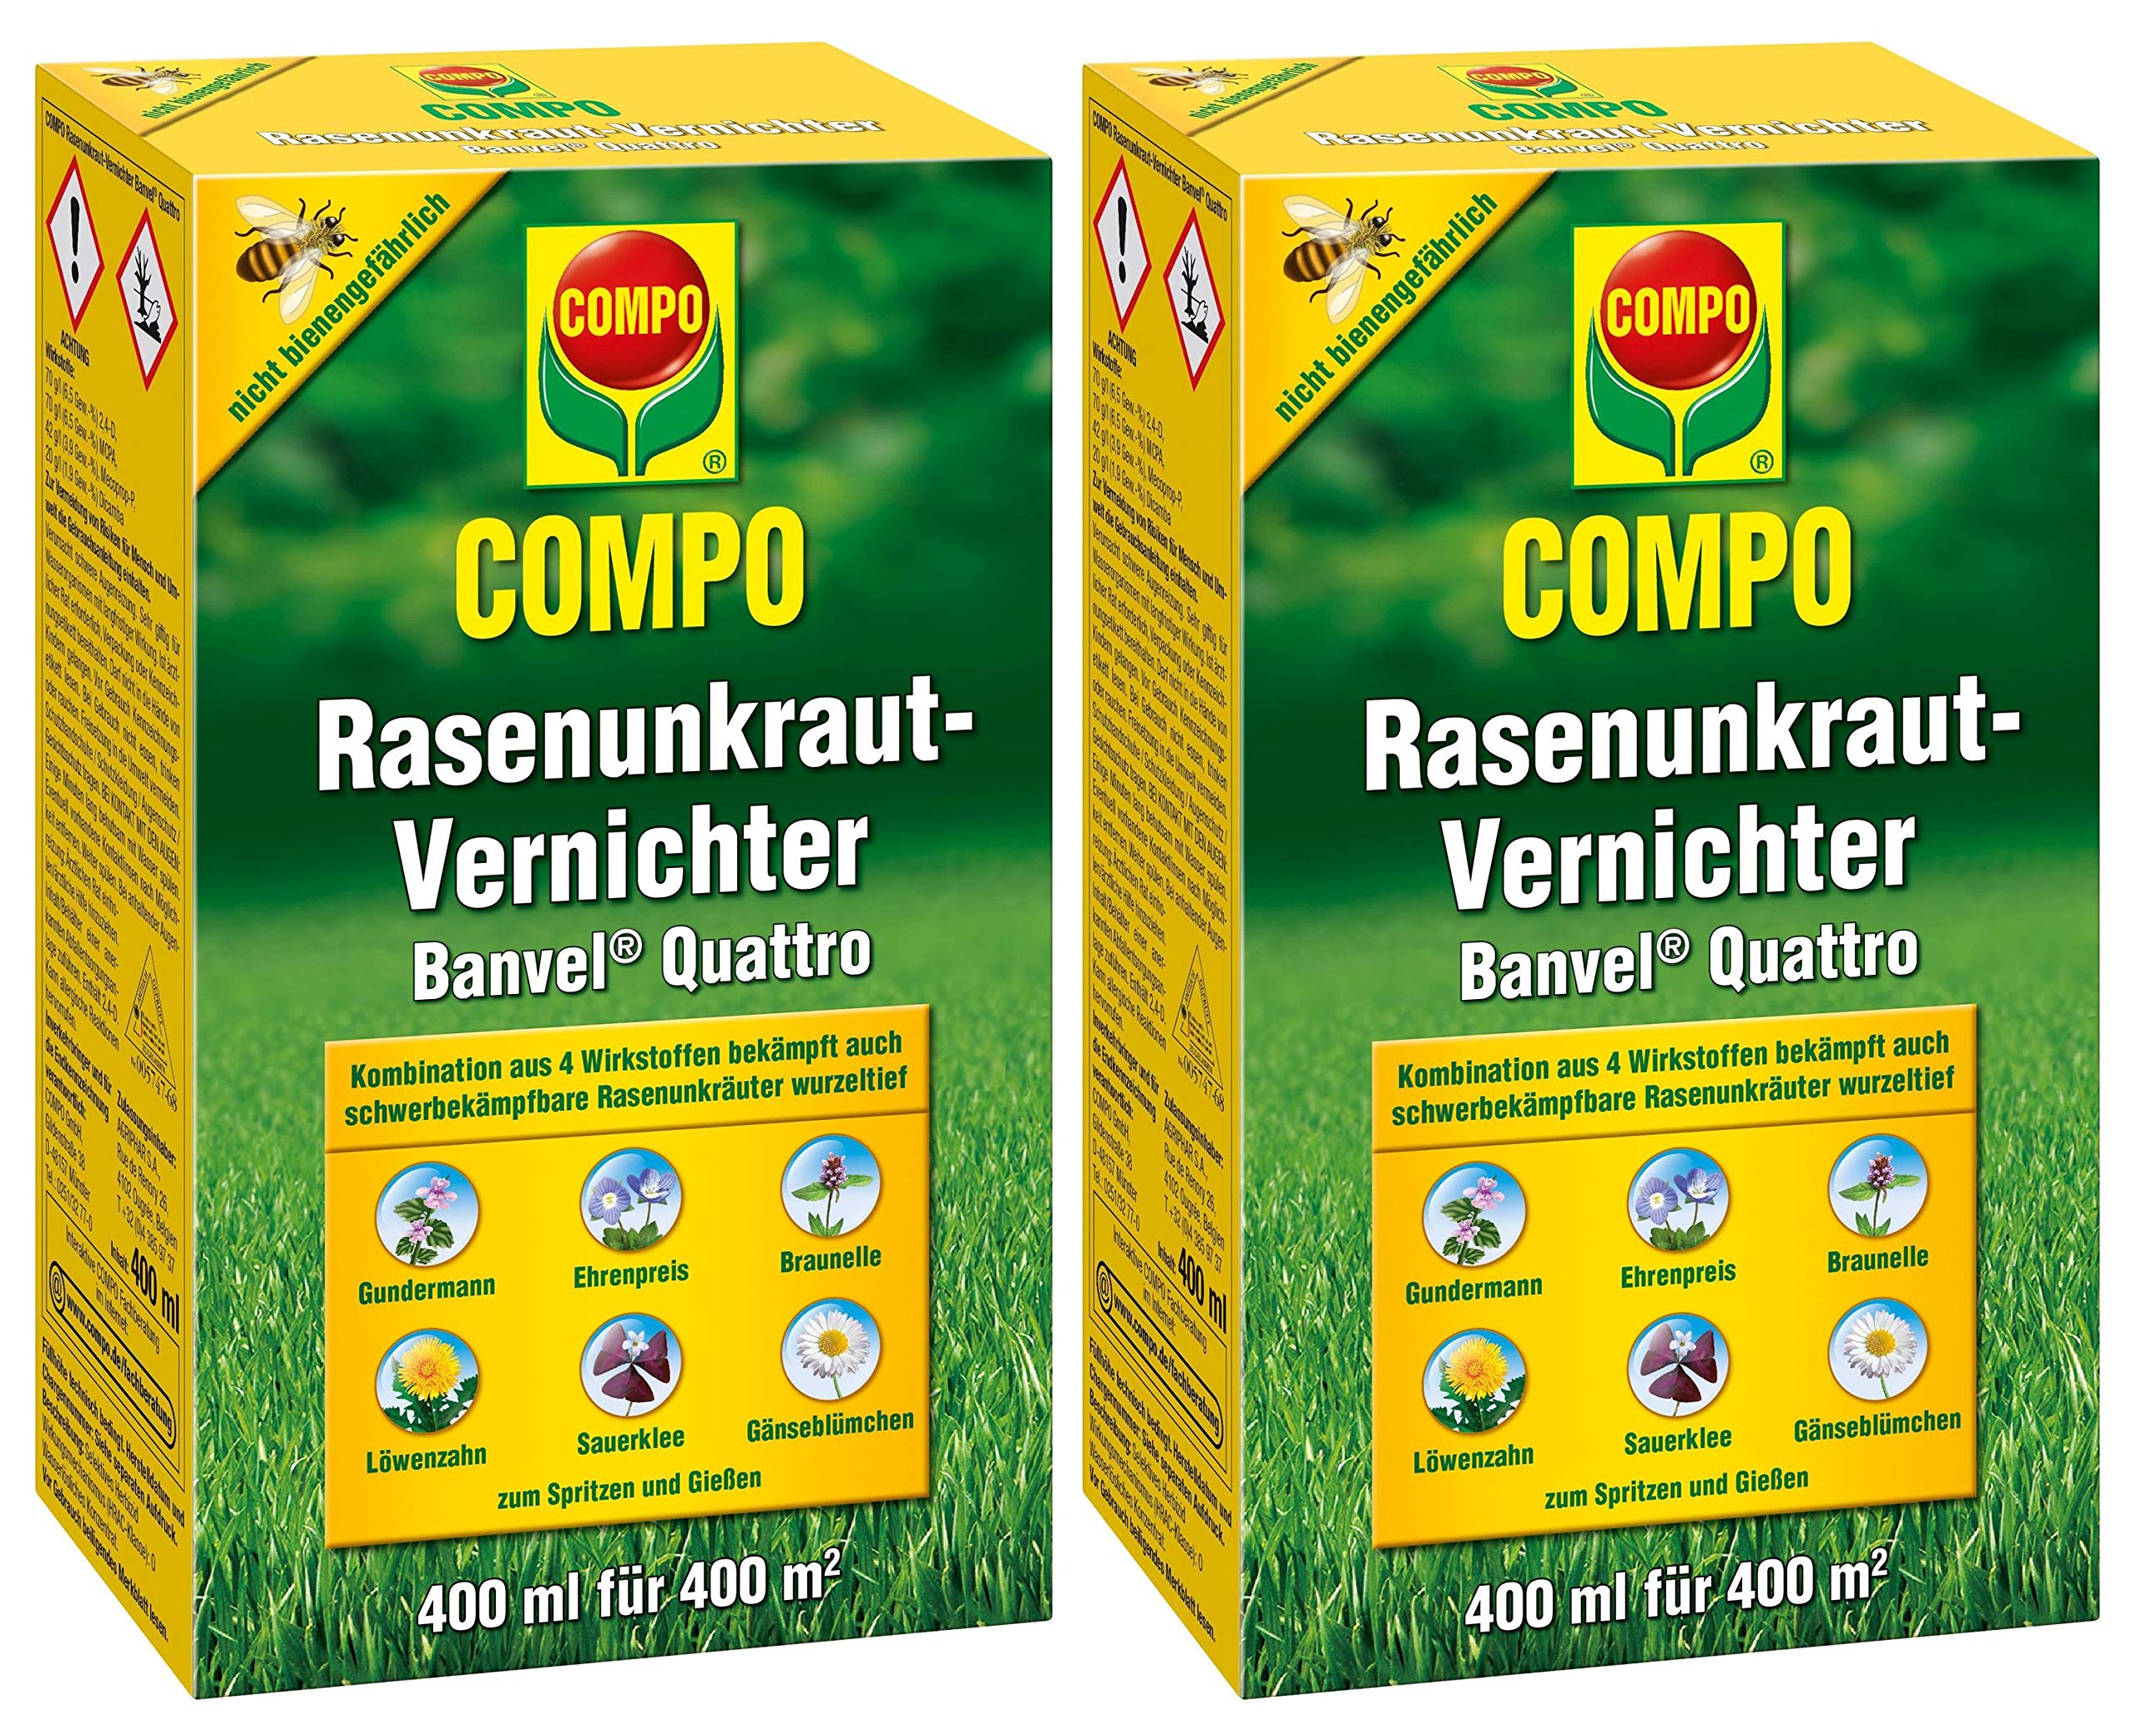 Compo Rasenunkraut-Vernichter Banvel Quattro, Bekämpfung von schwerbekämpfbaren Unkräutern im Rasen, Konzentrat, 800 ml (800 m²)